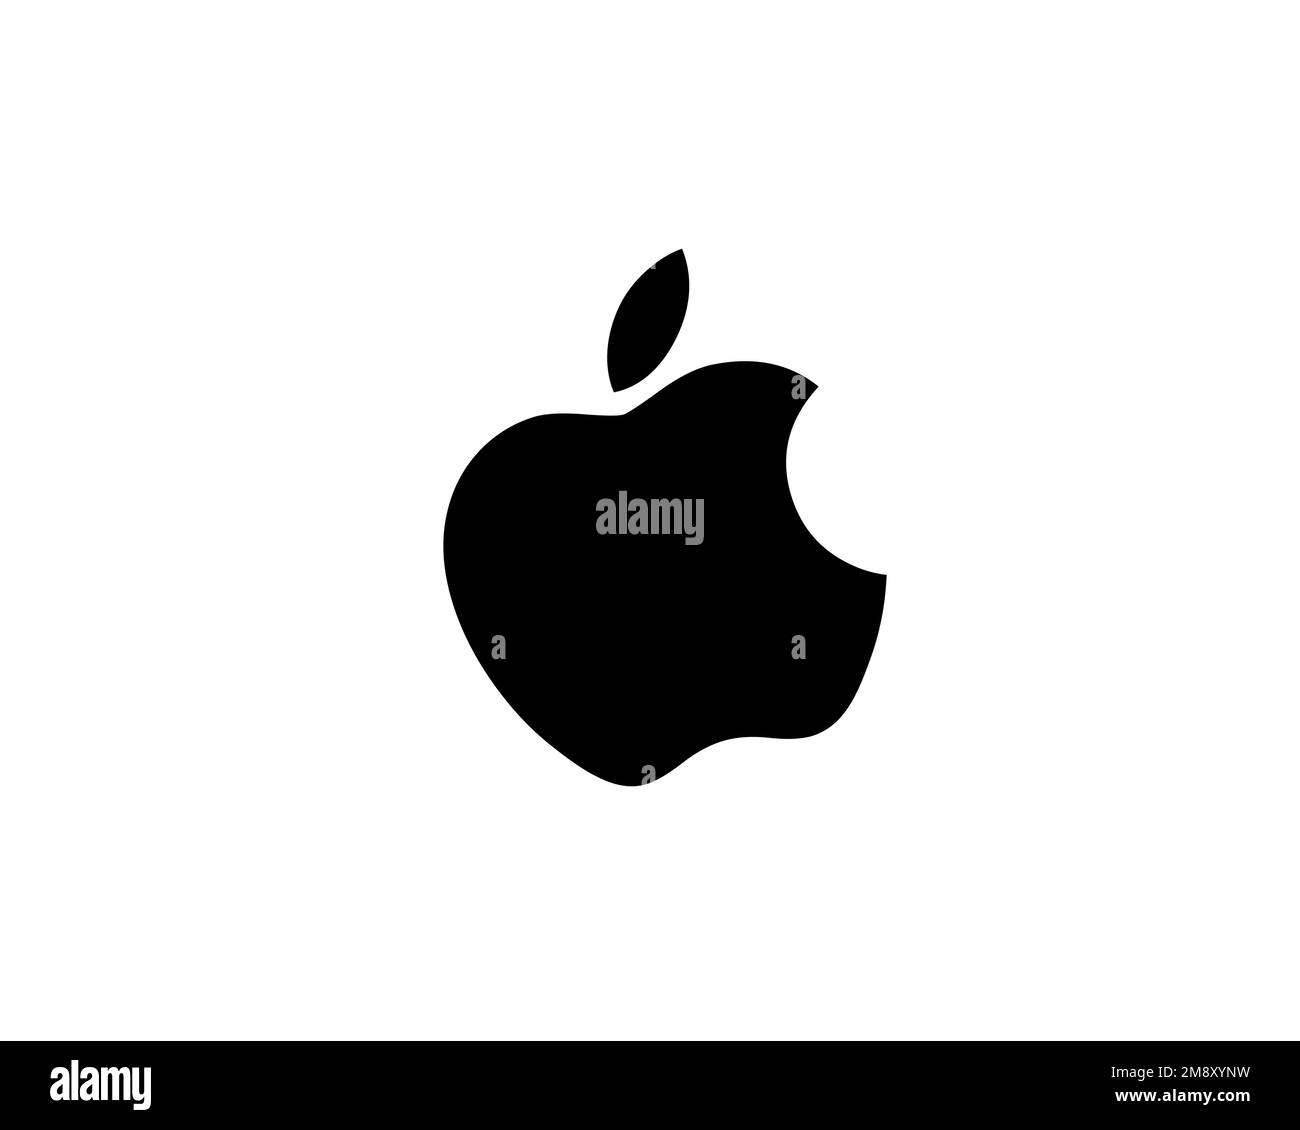 Apple Inc. rotated logo, white background Stock Photo